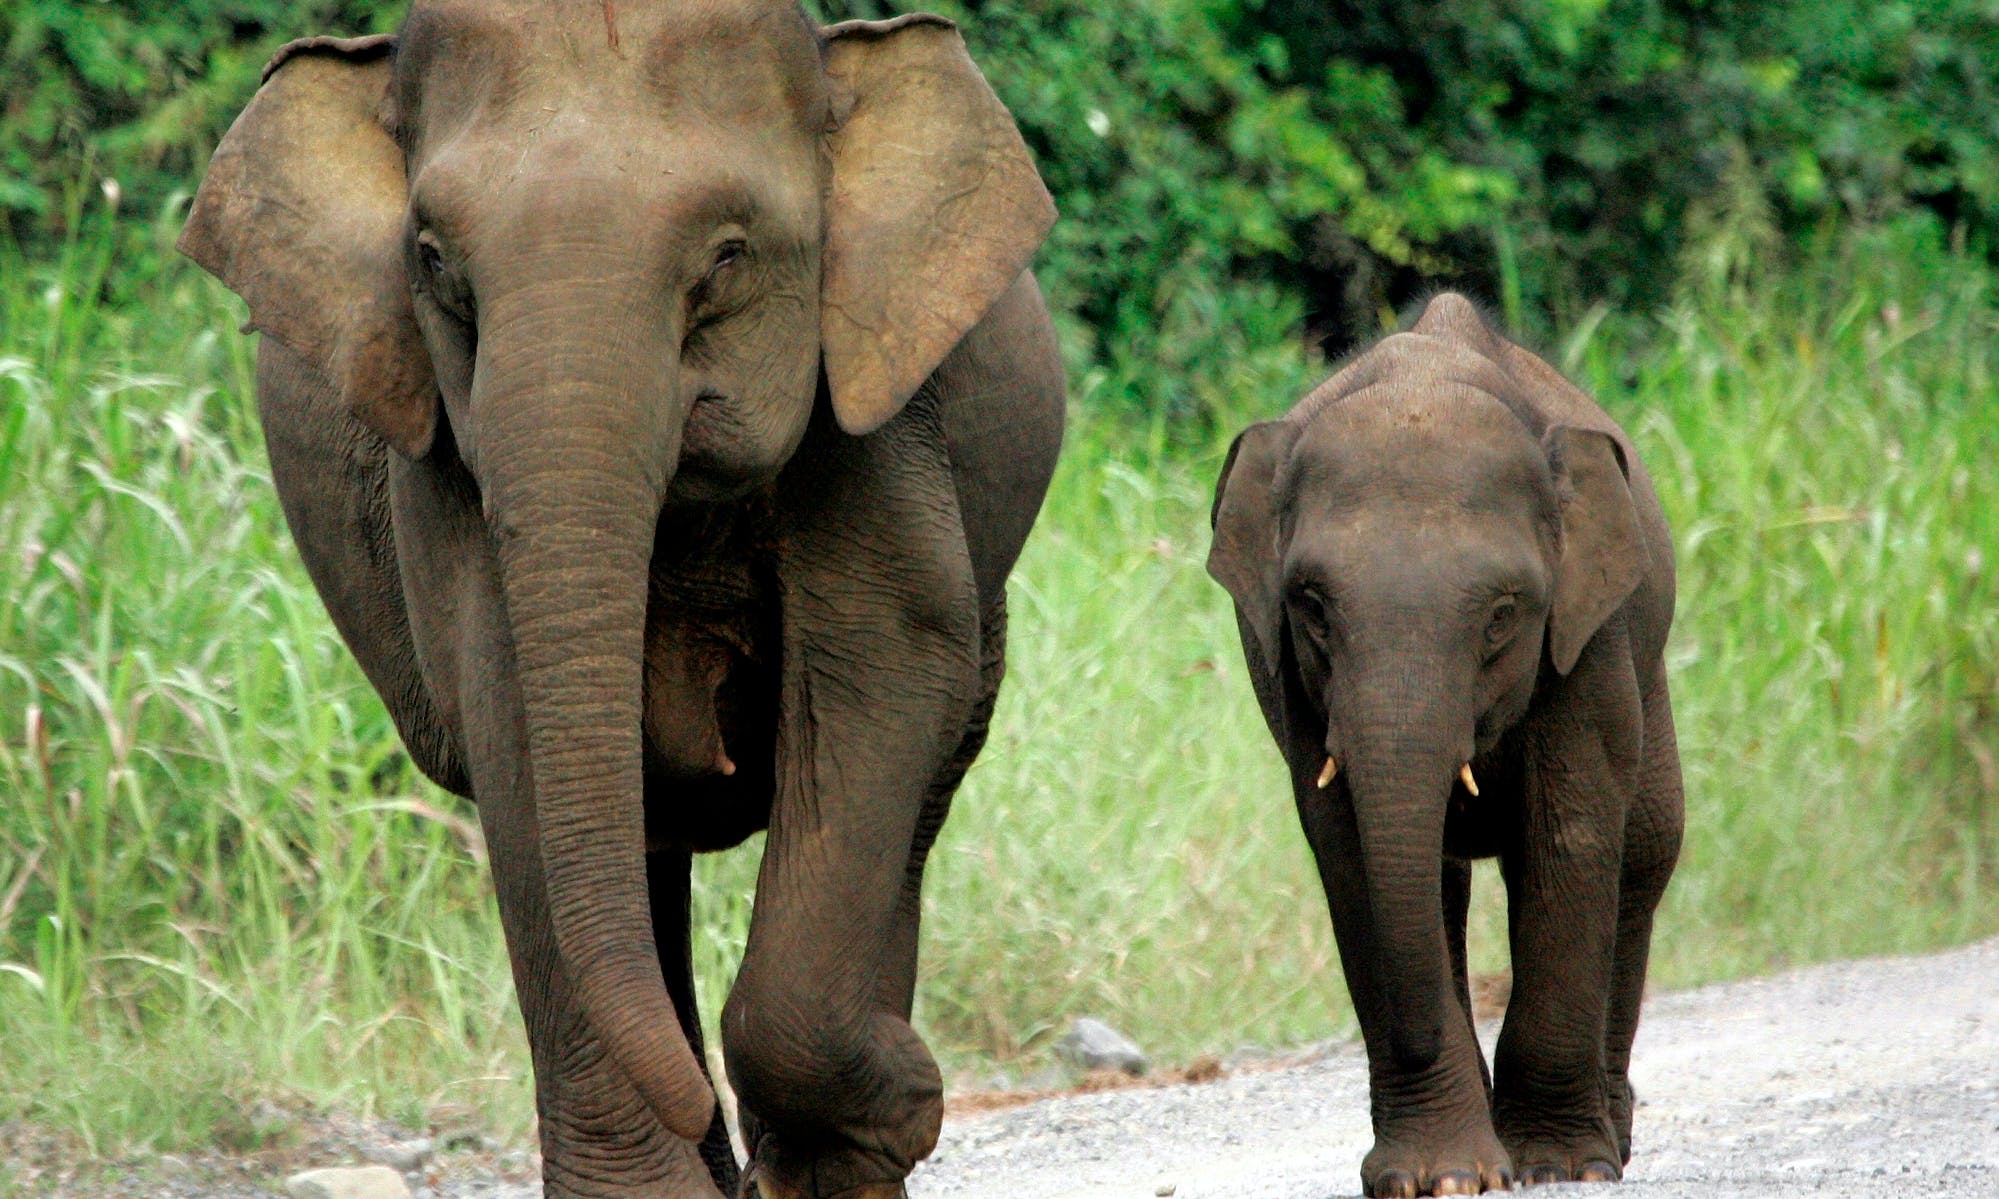 棲息地消失、盜獵者捕捉，婆羅洲侏儒象死亡數激增